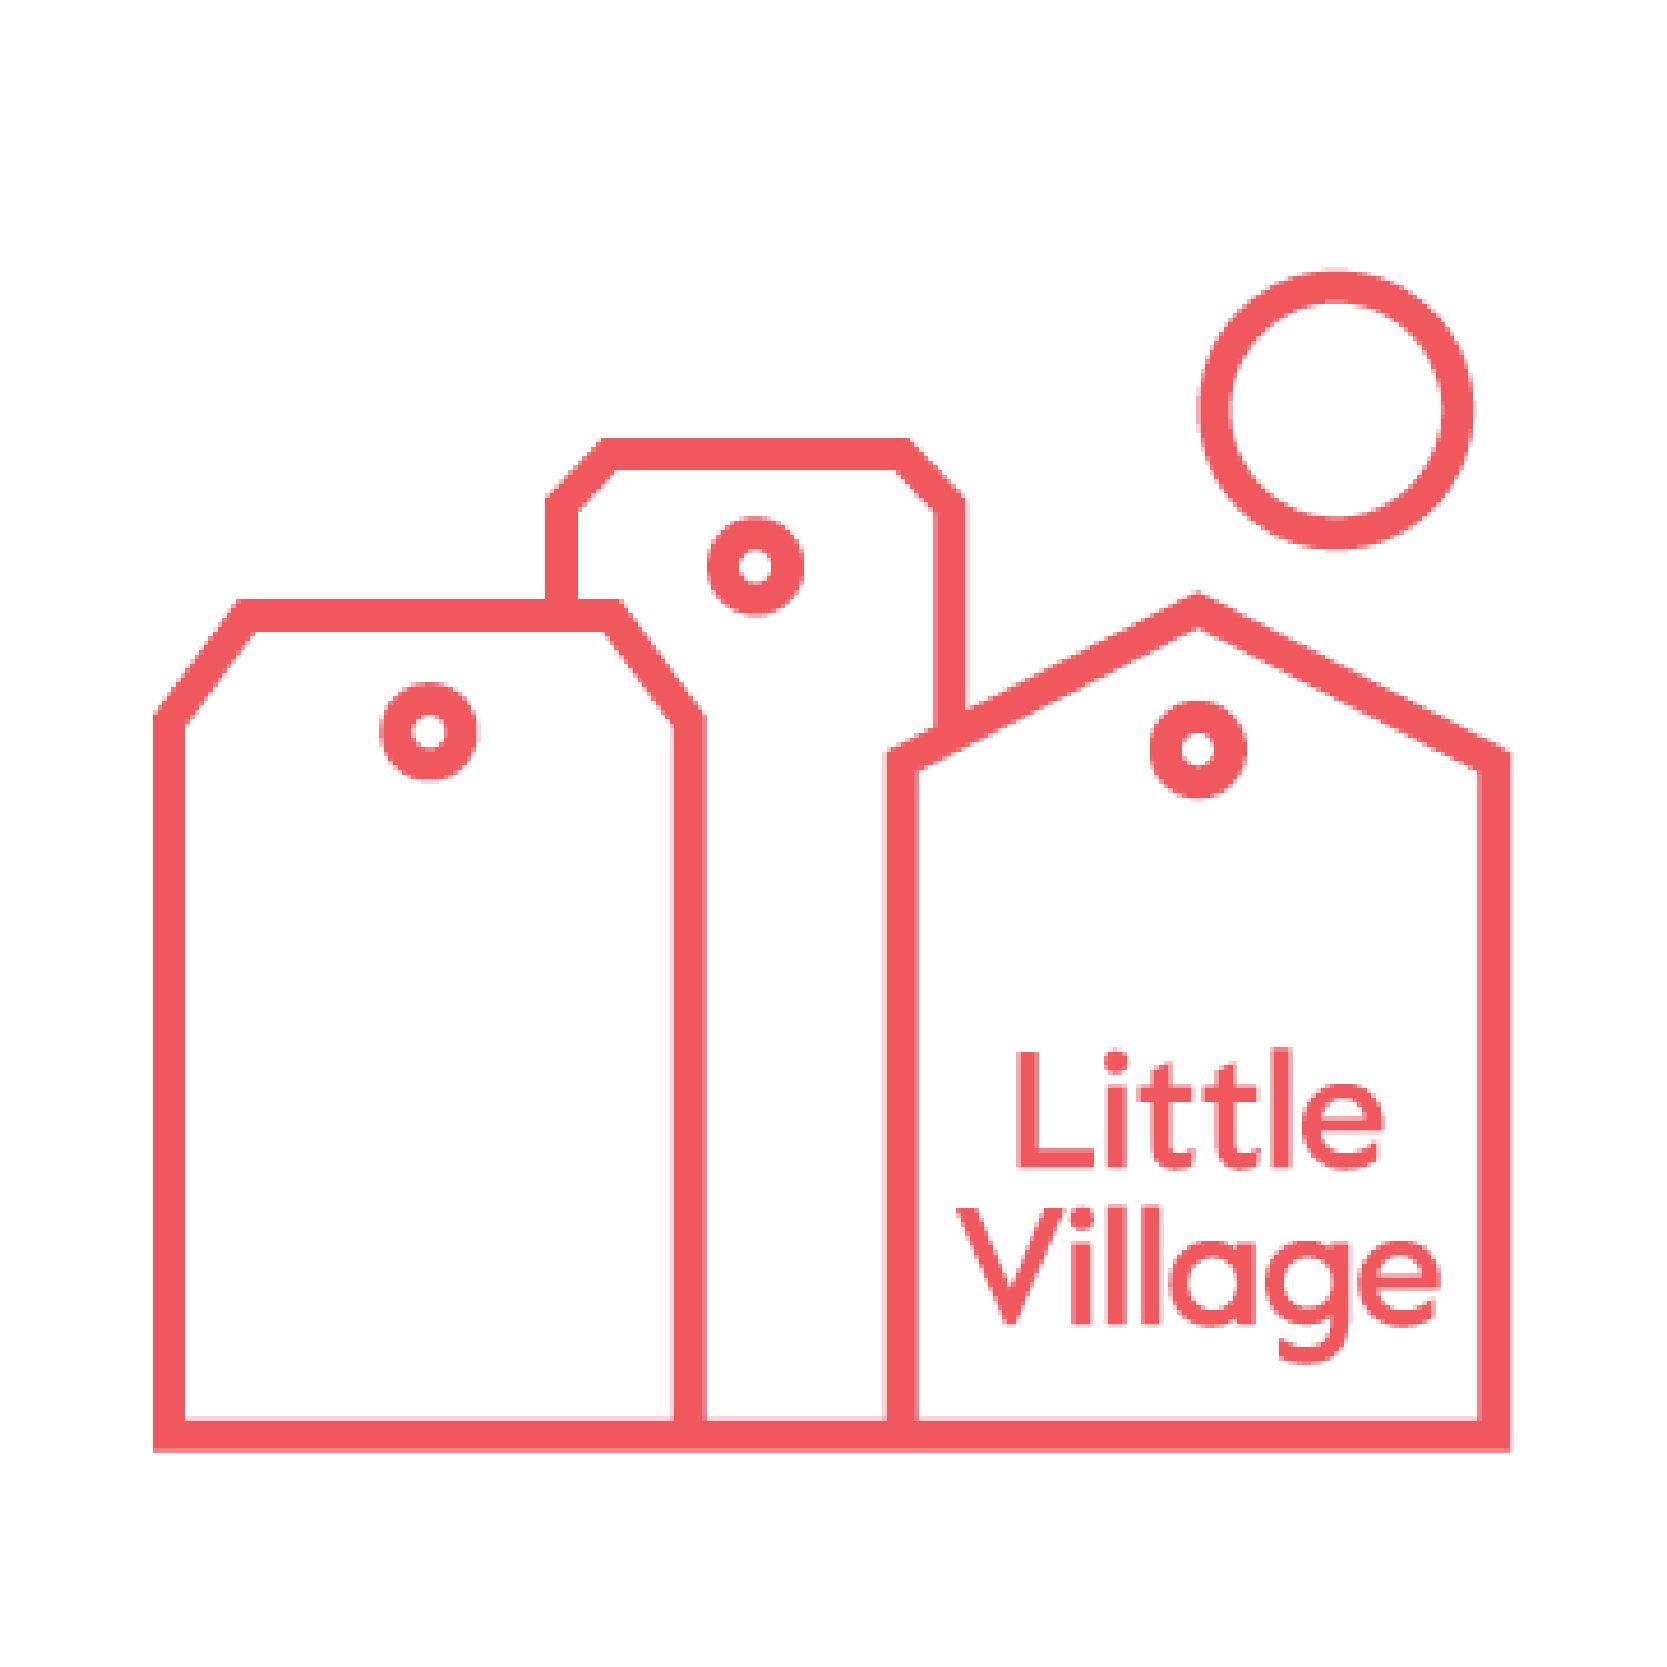 Little village square logo